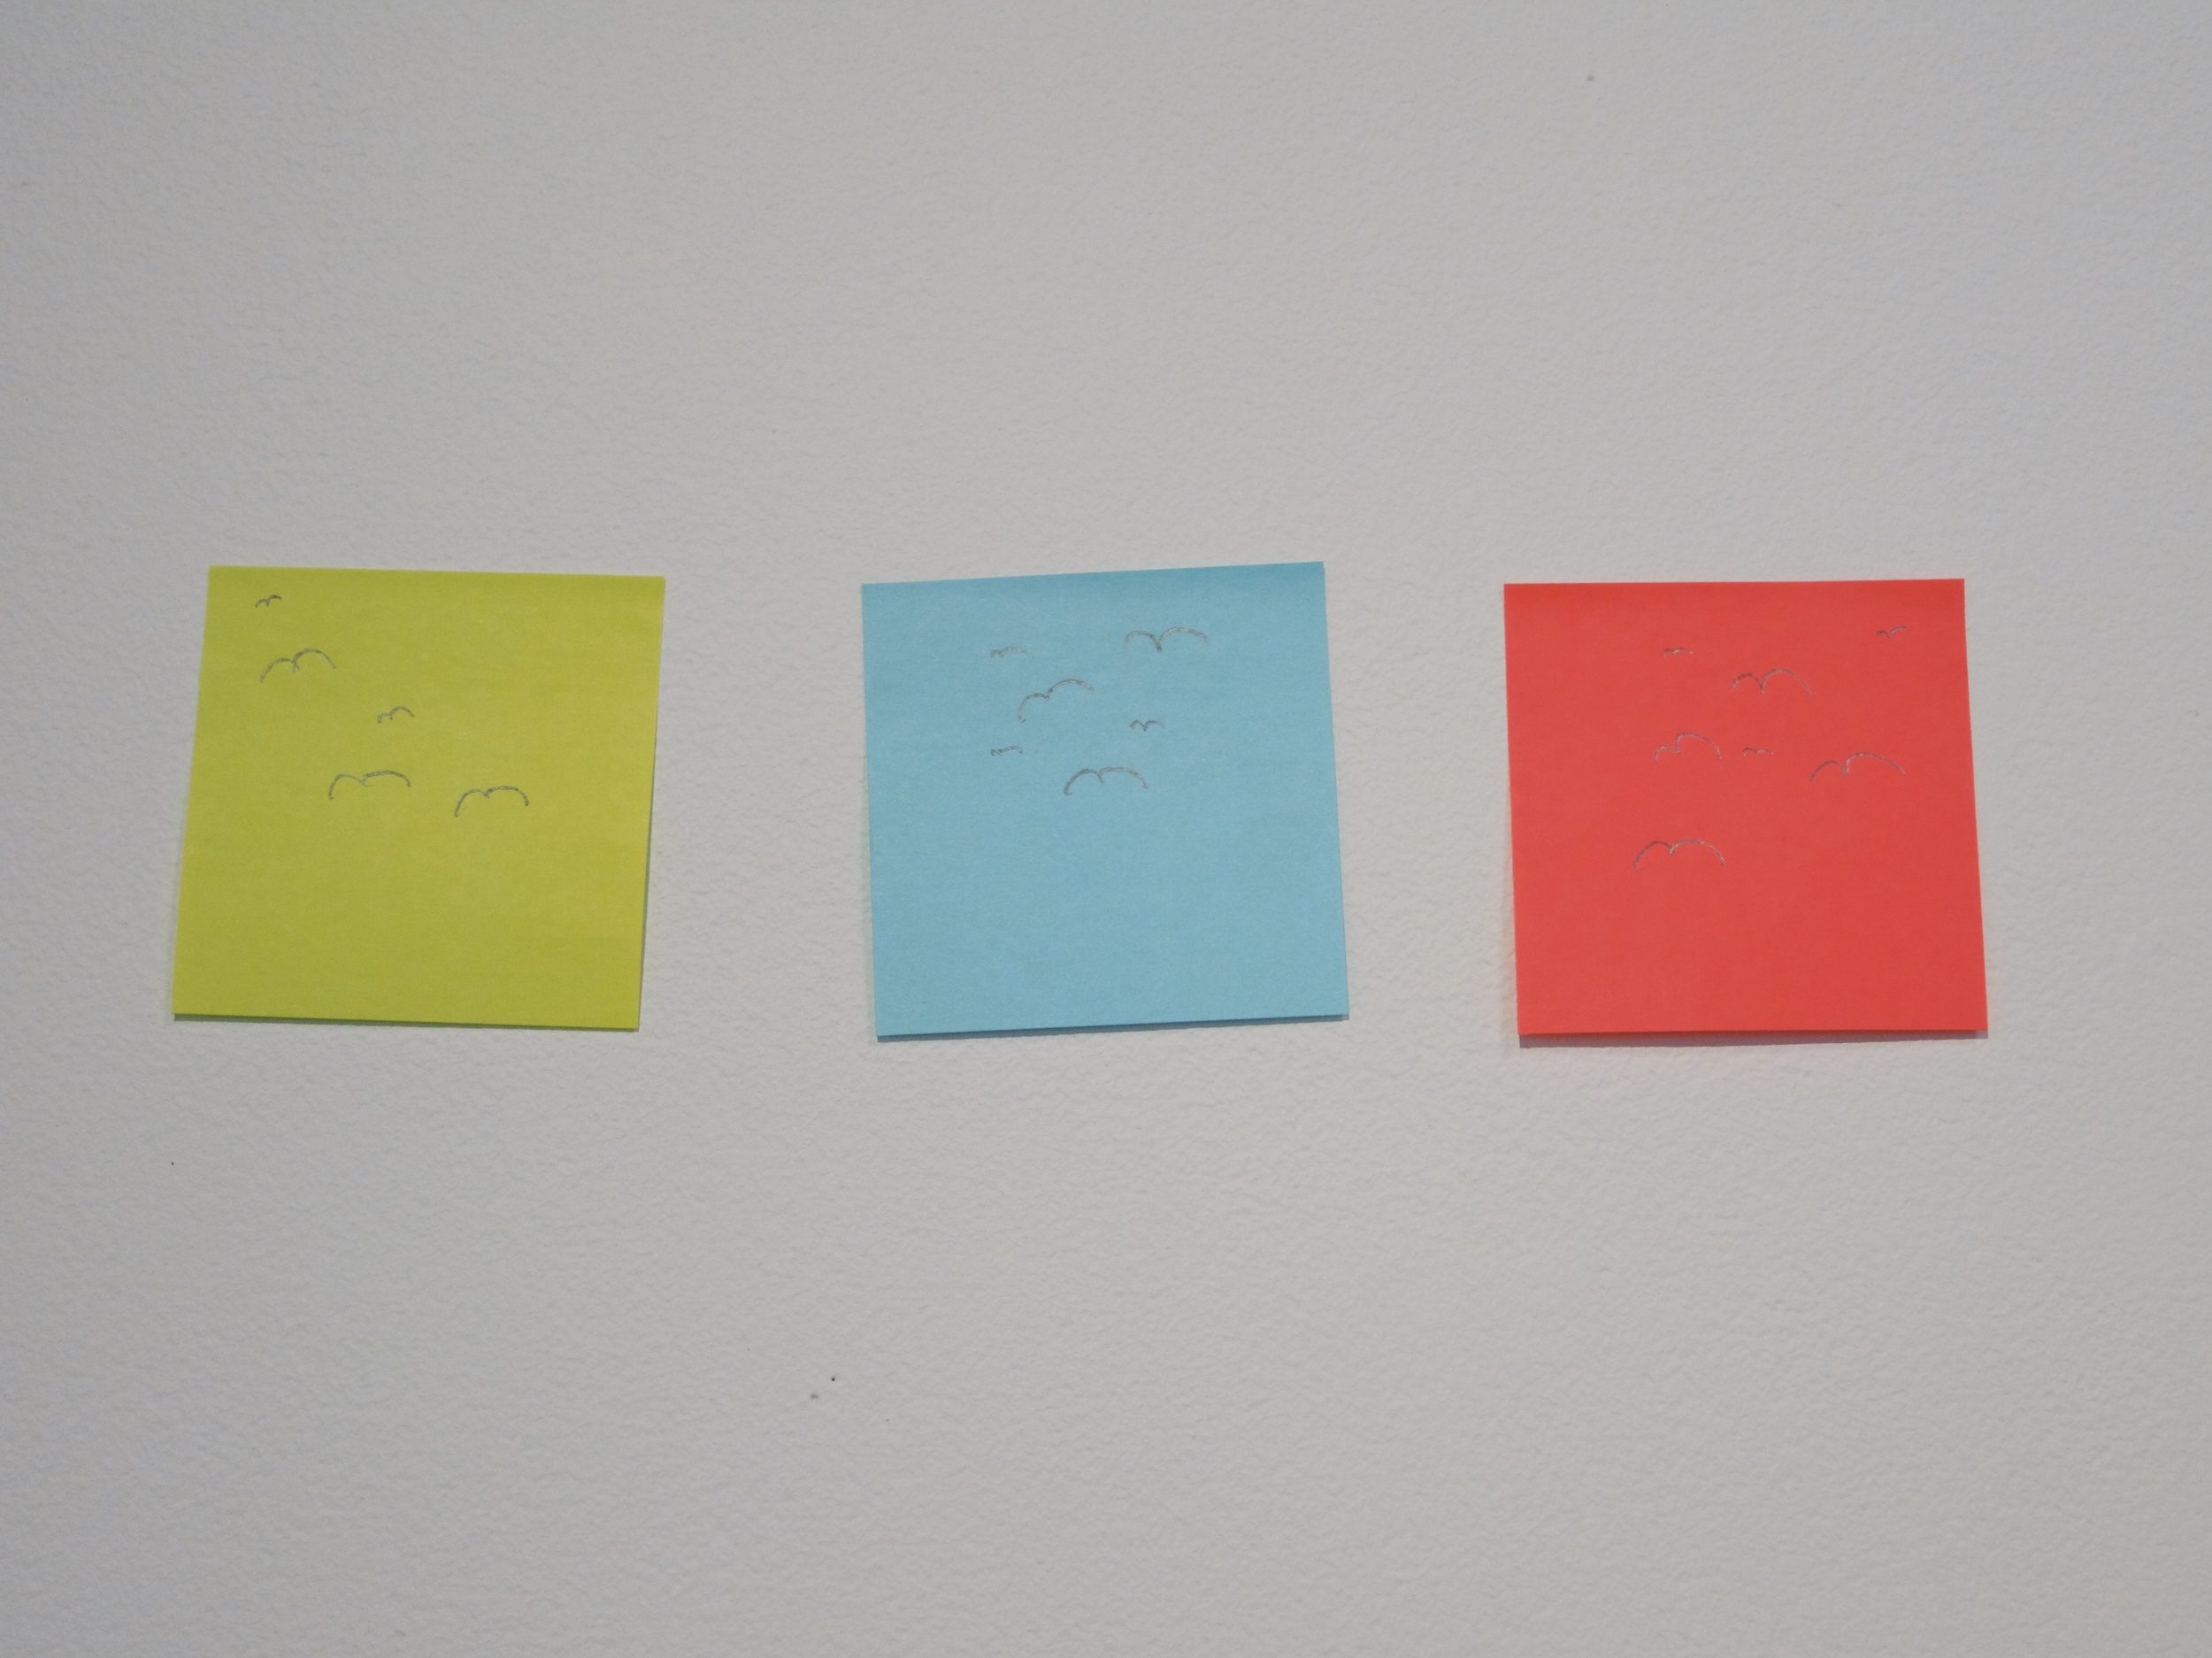  Sticky notes with drawn birds, 12x4x4, 2014. 